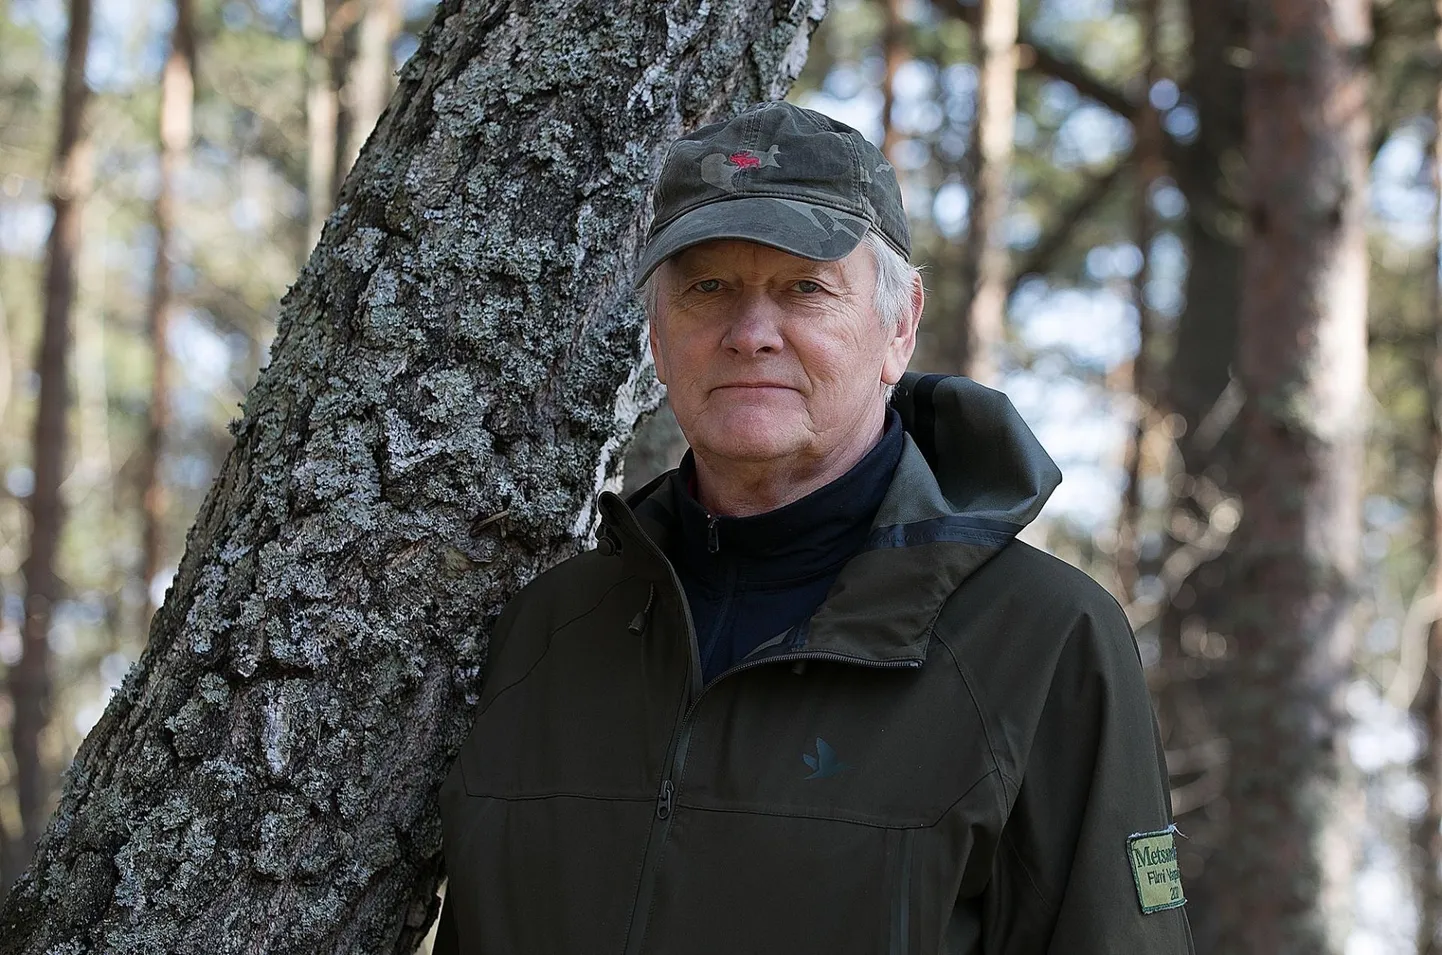 Kogenud metsamees Mart Erik sõnas, et ta pole päris kindel, kui suur osa tema metsast looduskaitse all on. Piirangud selguvad tavaliselt töö käigus.